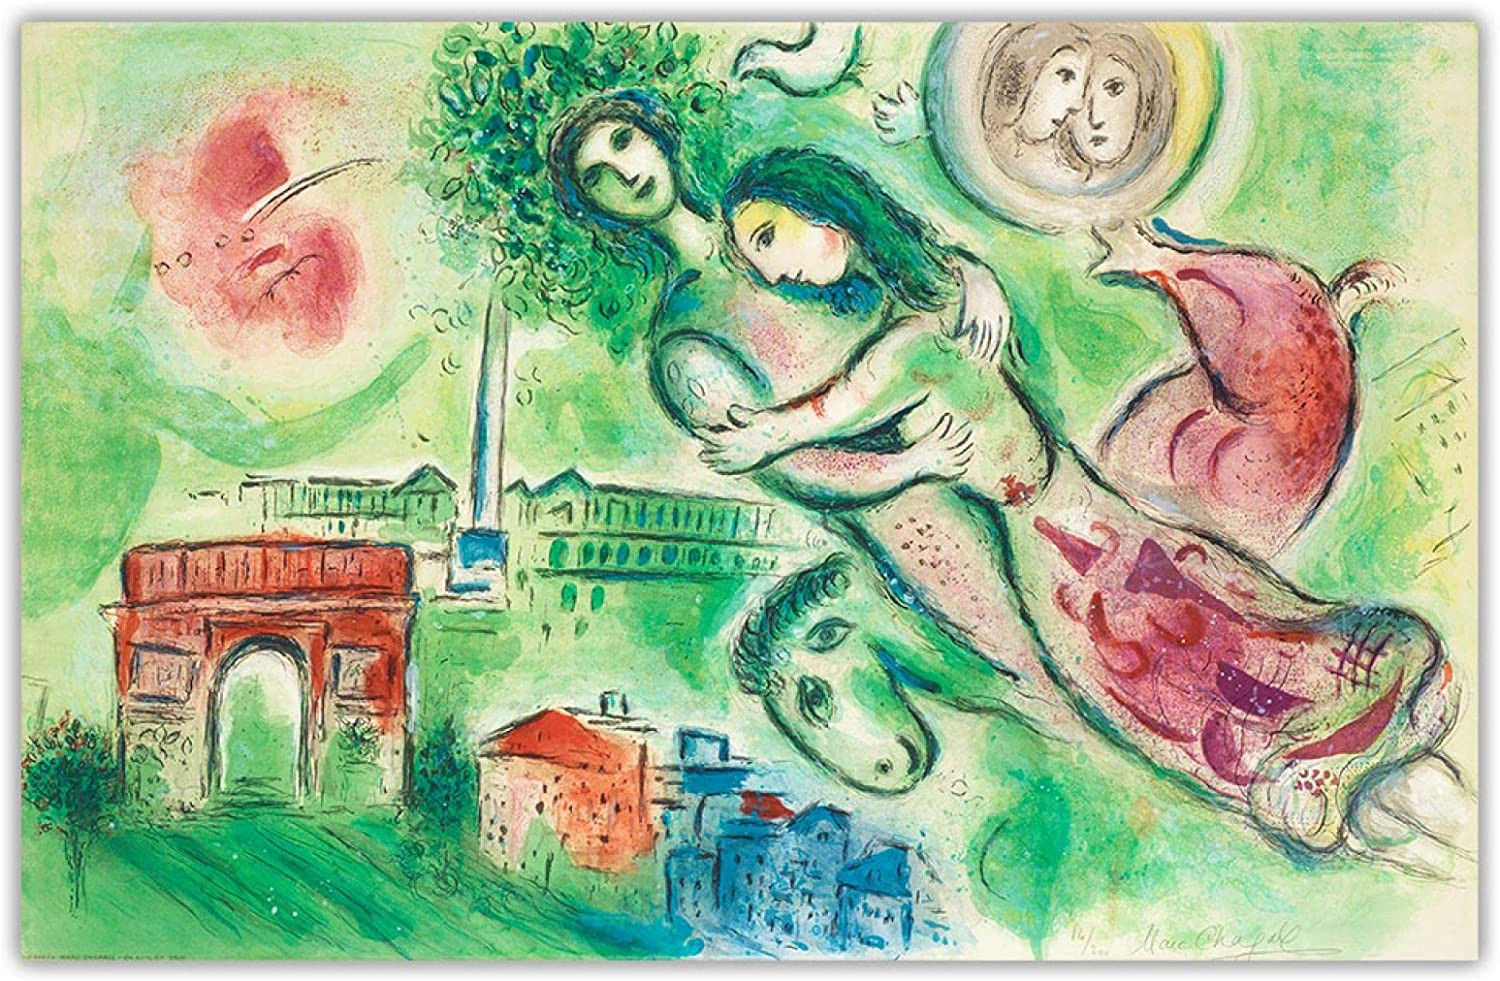 Lithographie de Marc Chagall, La flûte enchantée, 1967